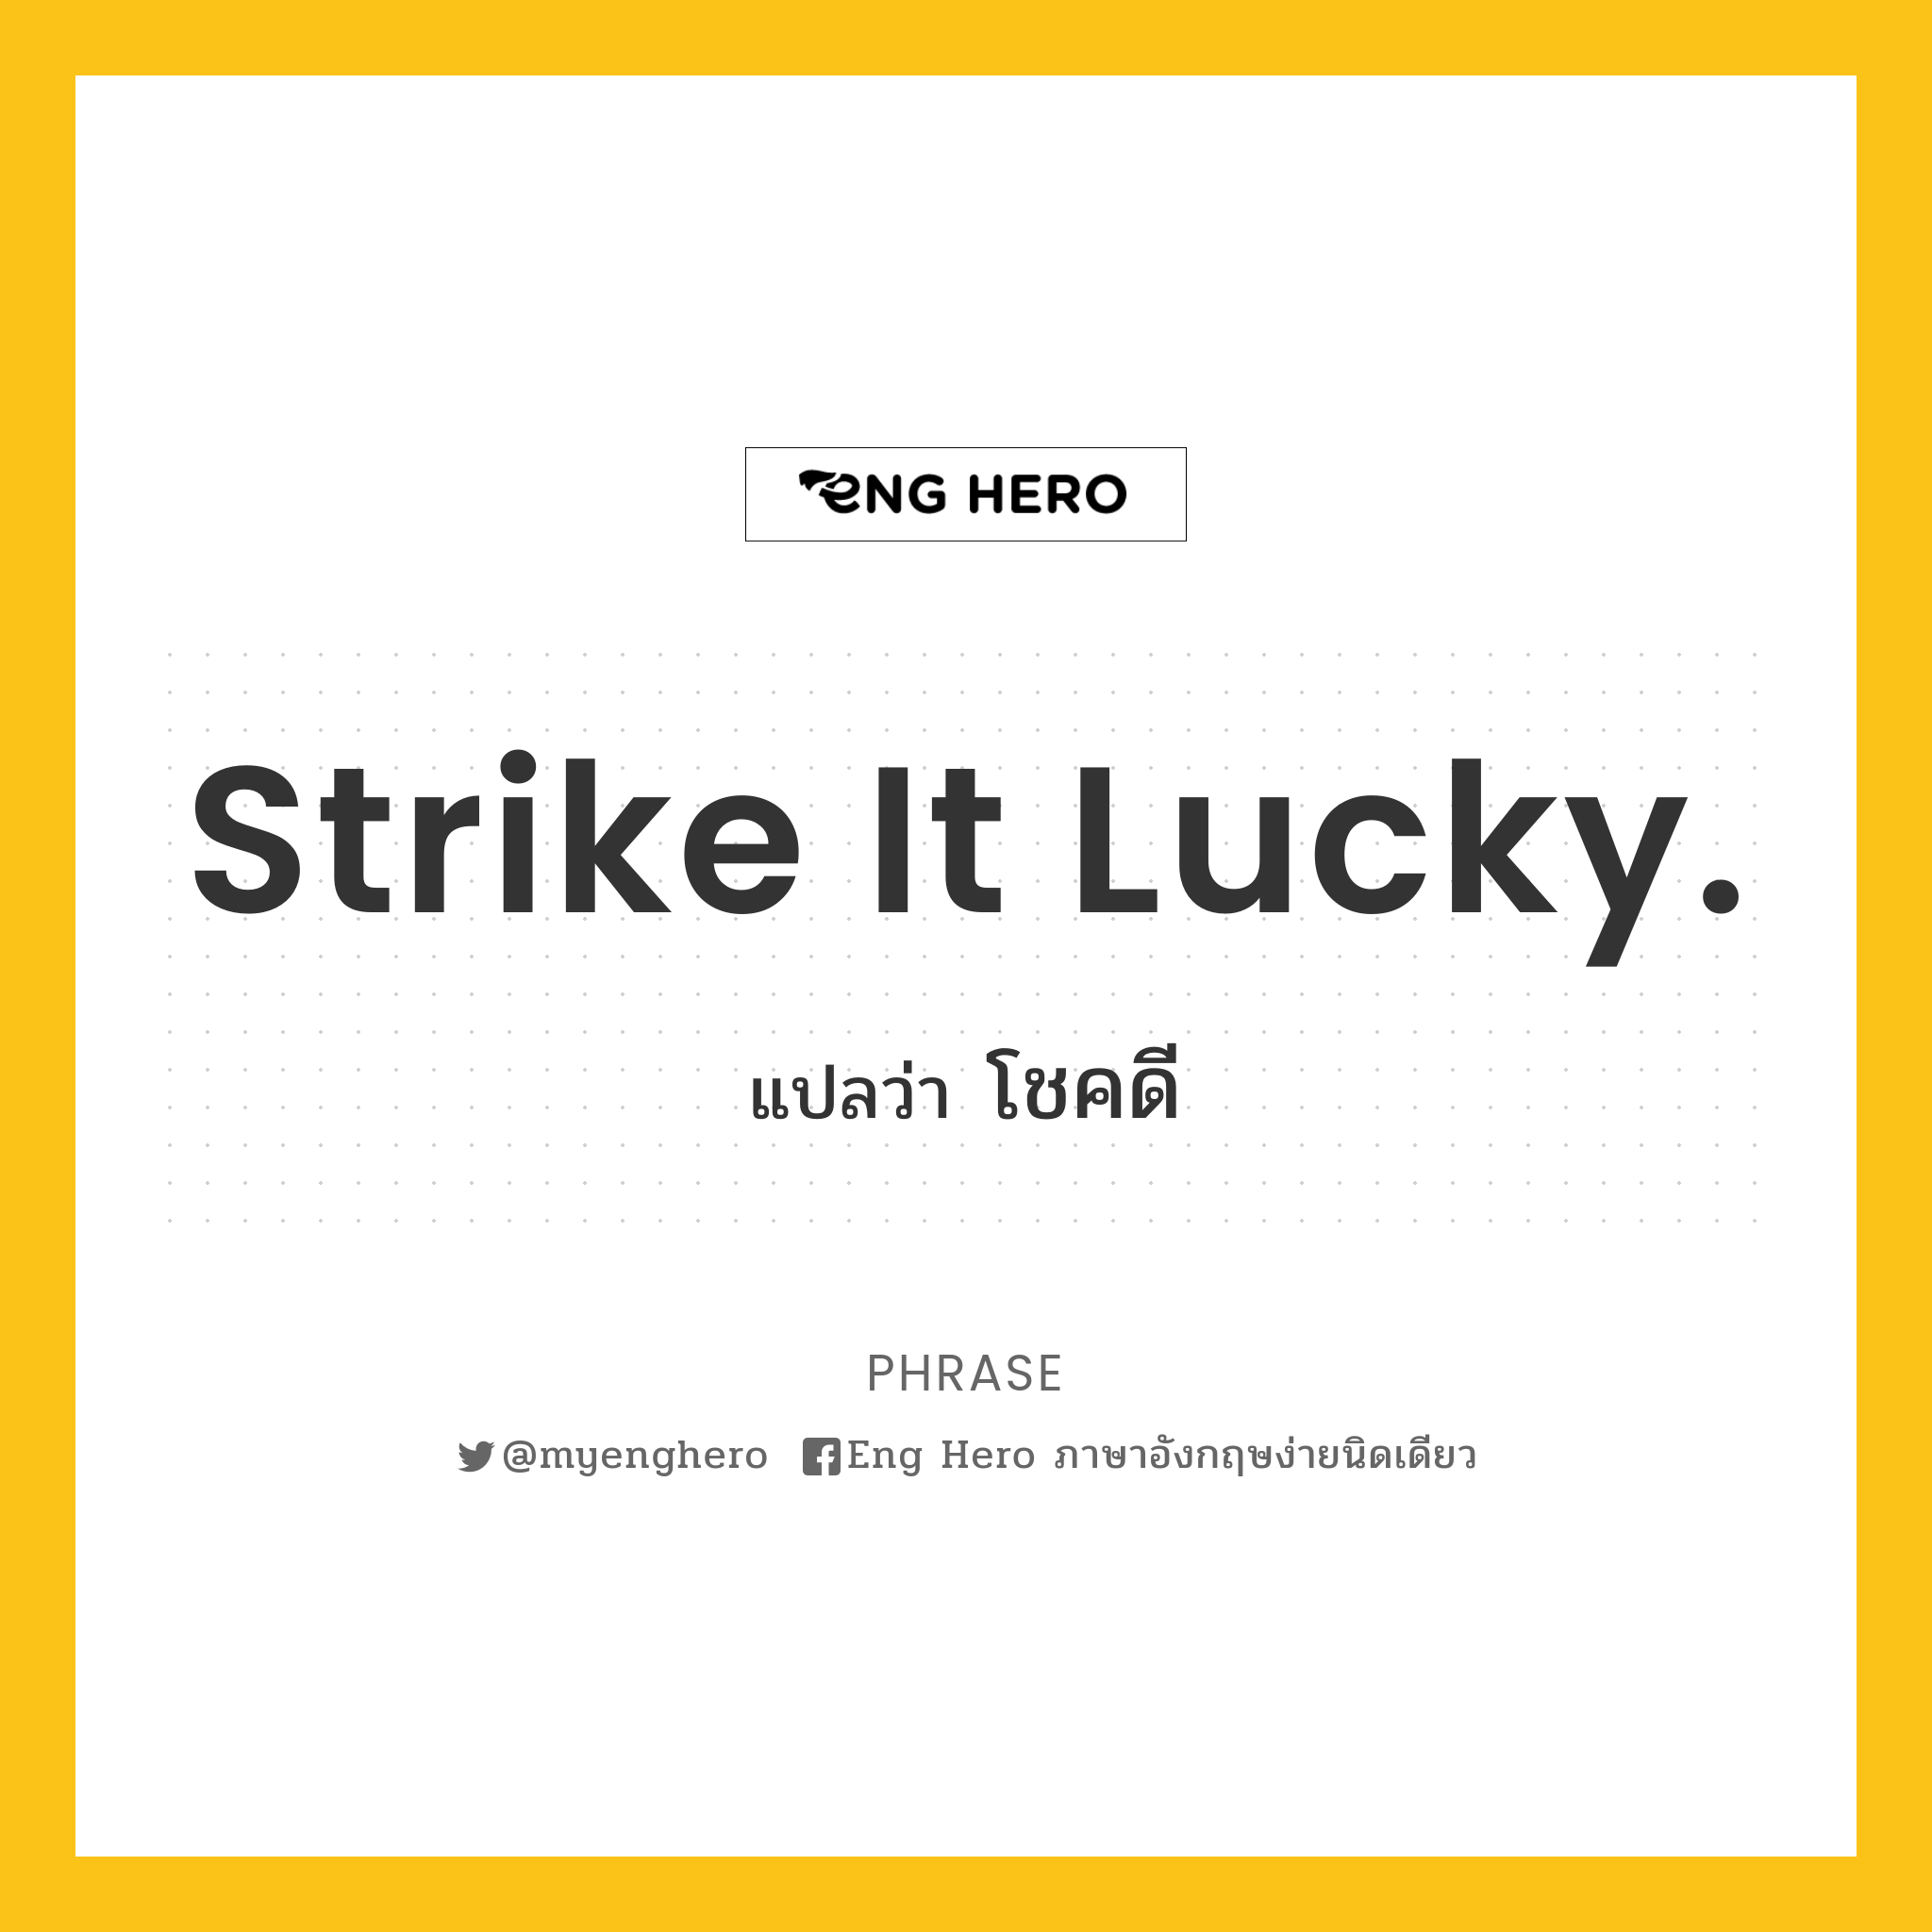 Strike it lucky.